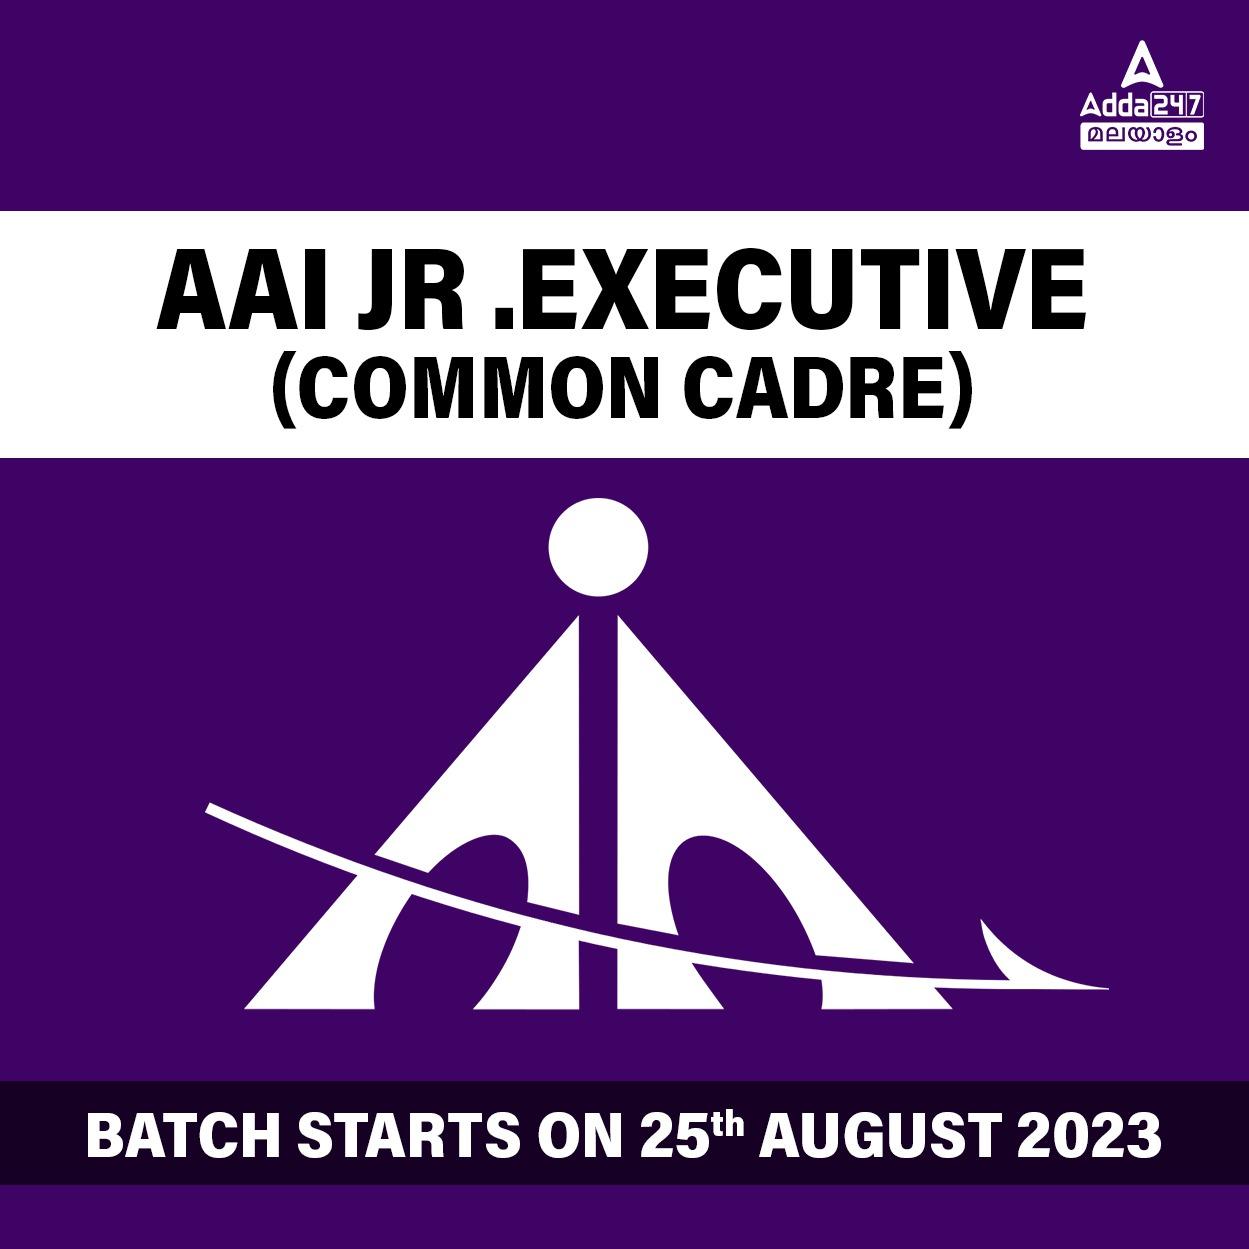 AAI Jr .Executive (Common Cadre) Batch